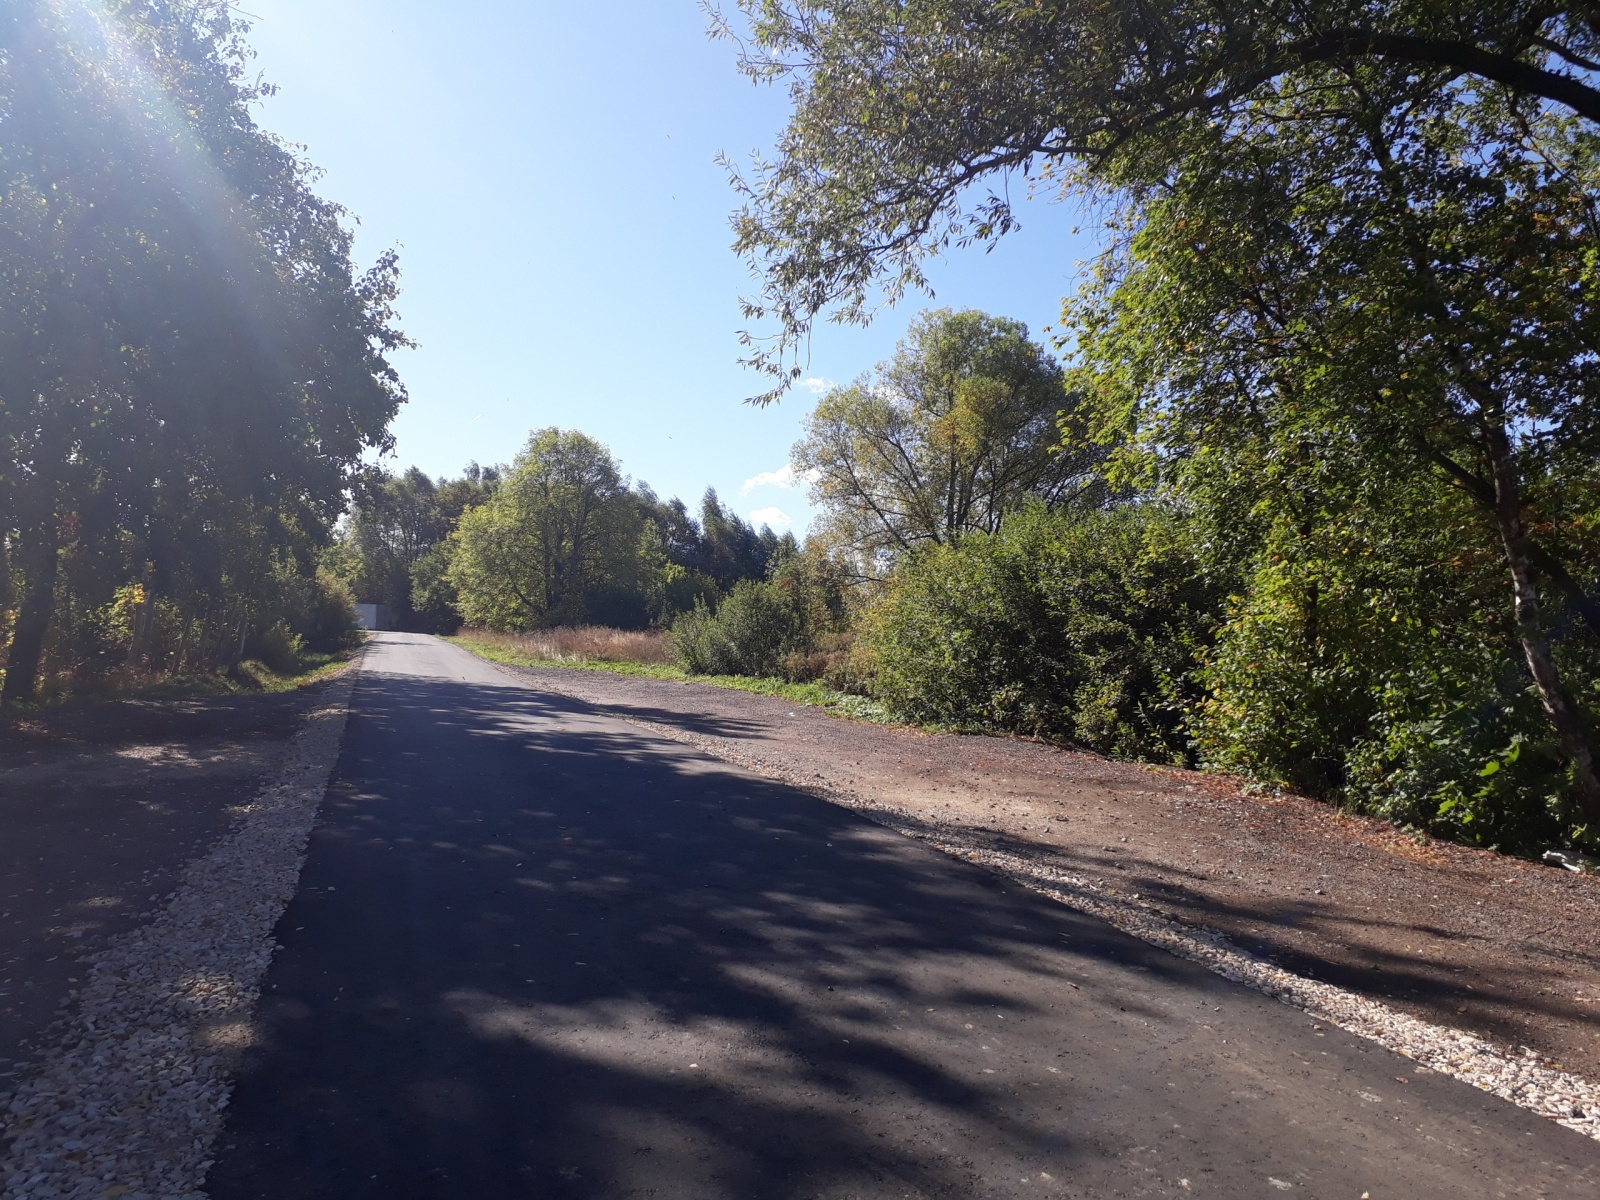  Специалисты завершили ремонт подъездной дороги в Рязановском